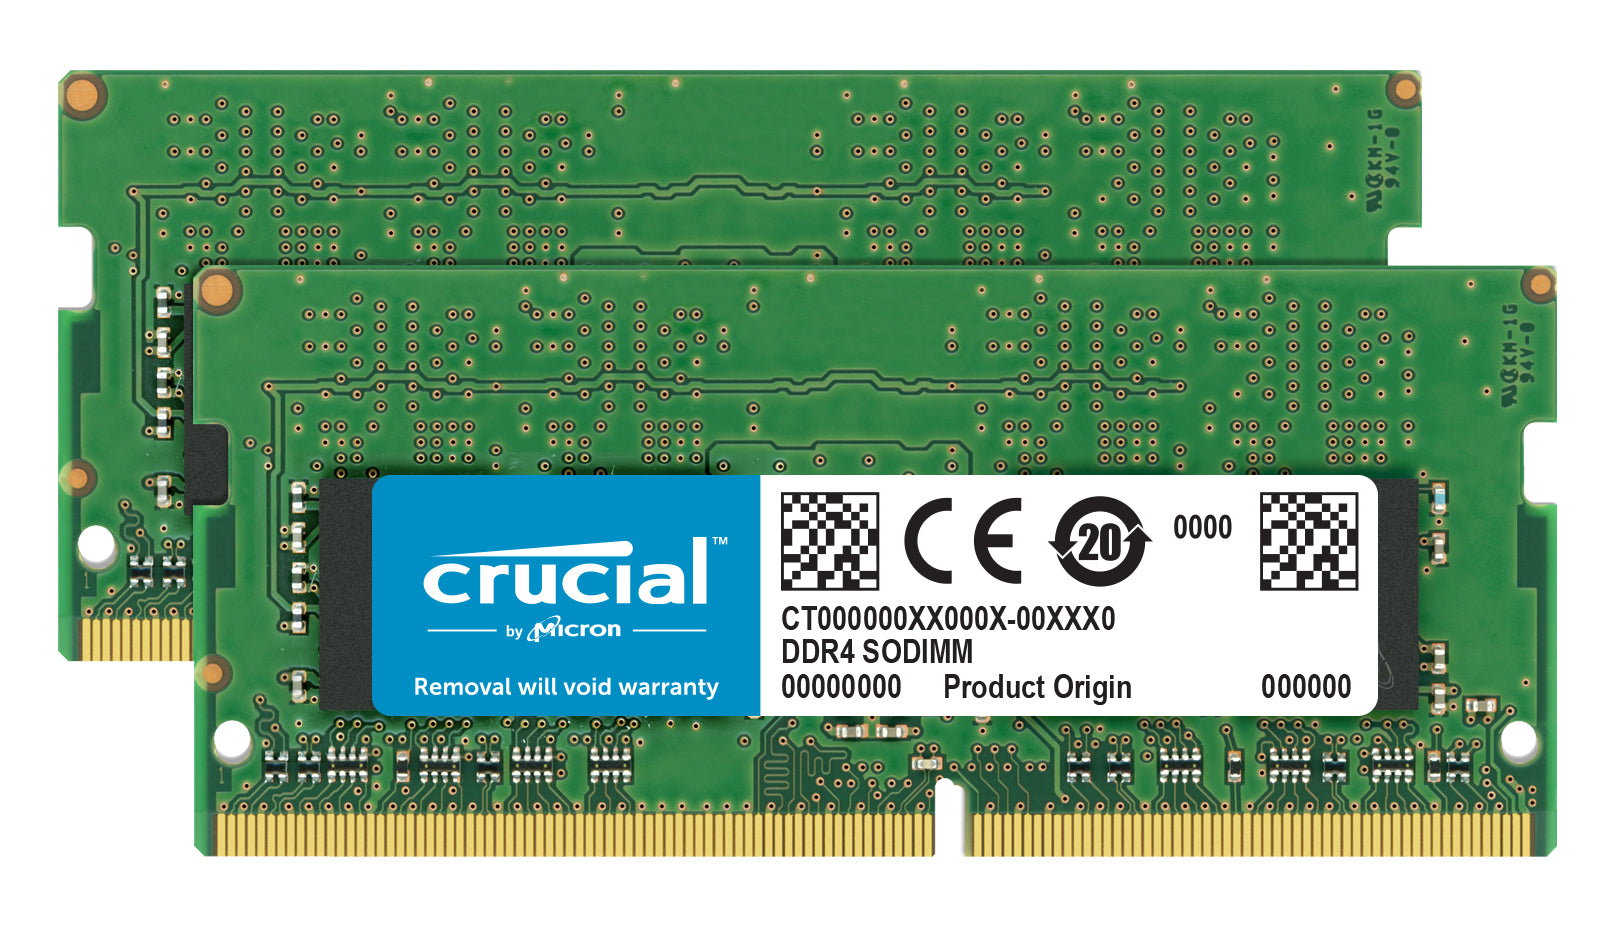 Crucial 2x16GB DDR4 memory module 32 GB 2400 MHz